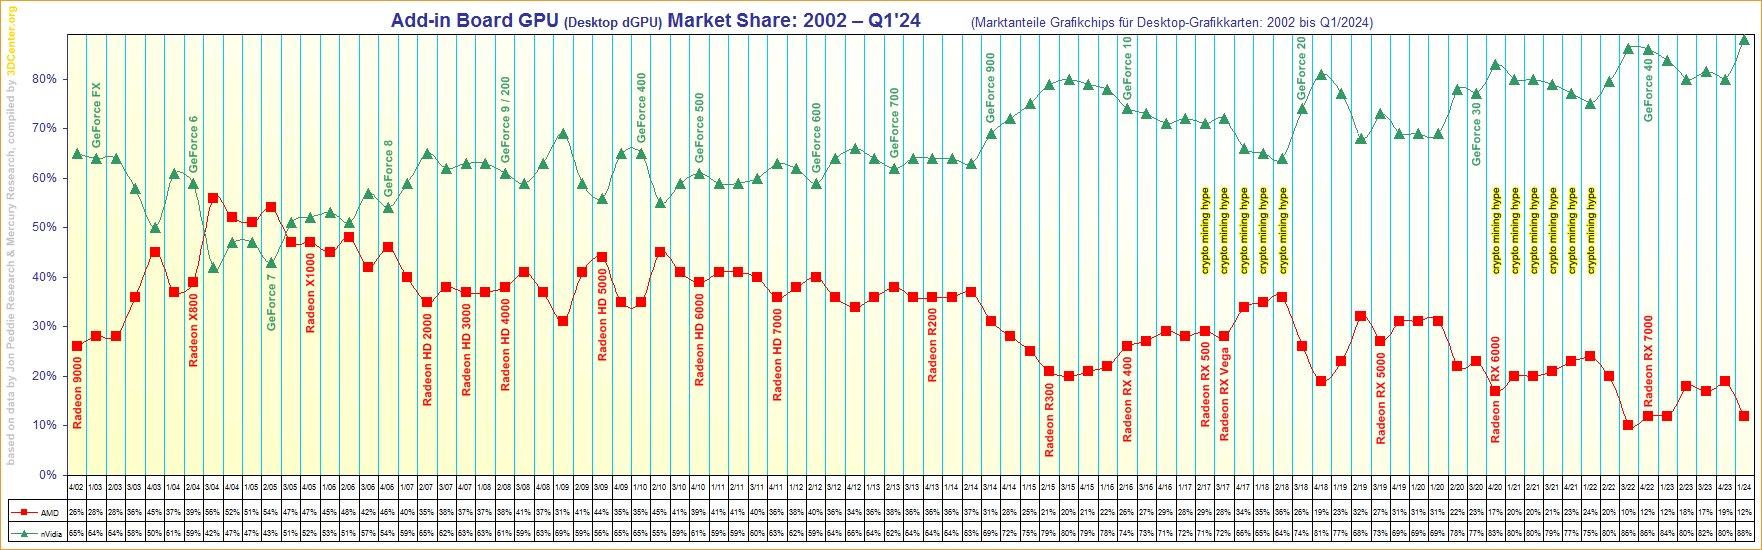 Parts de marché GPU dédiés desktop AMD / NVIDIA depuis 2002 © 3DCenter